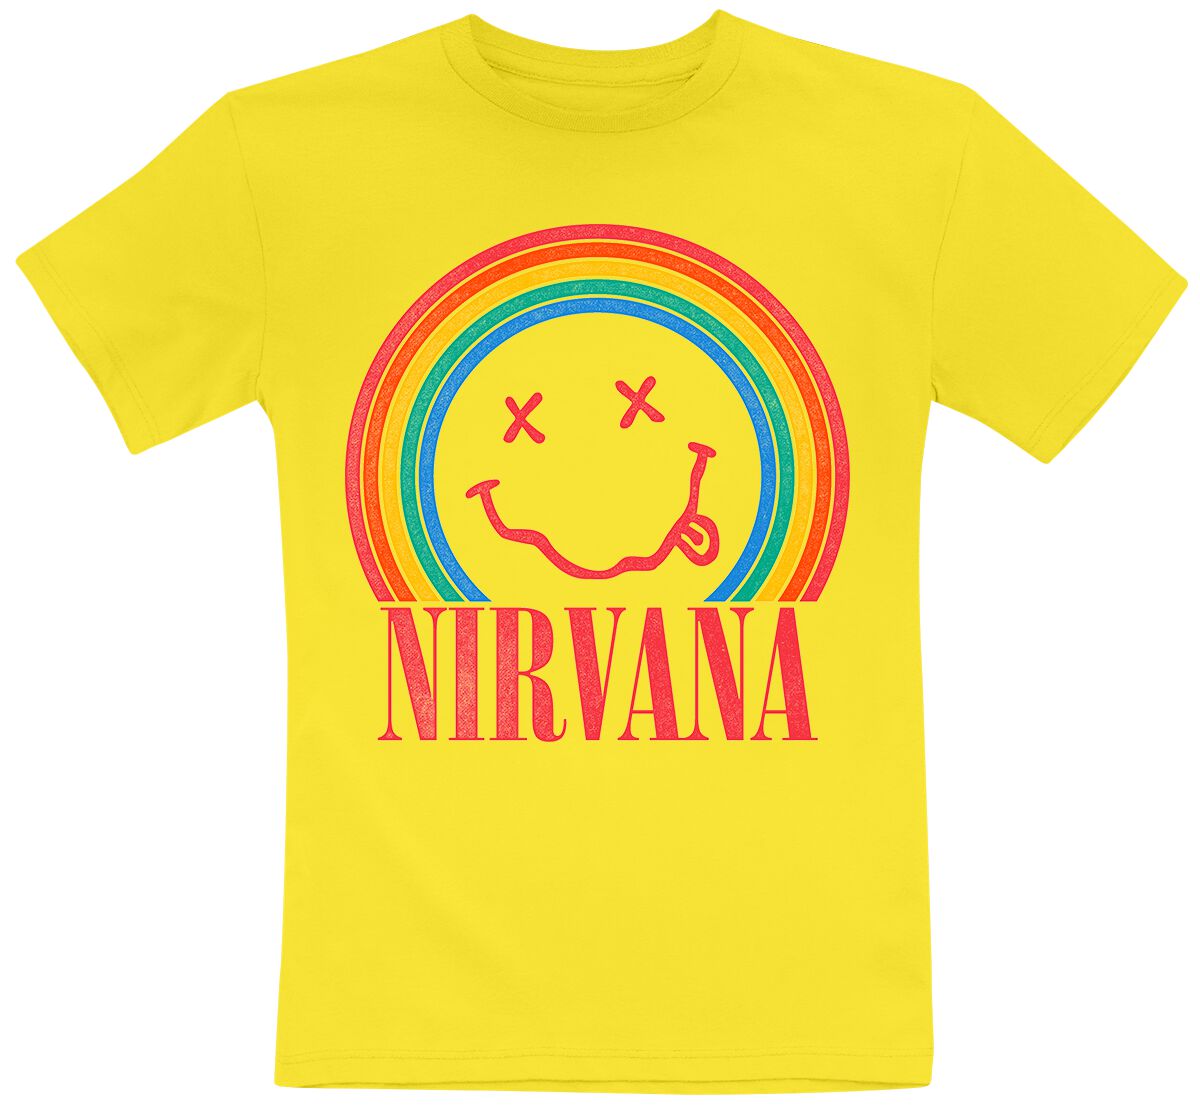 Nirvana T-Shirt für Kinder - Kids - Rainbow - für Mädchen & Jungen - gelb  - Lizenziertes Merchandise!